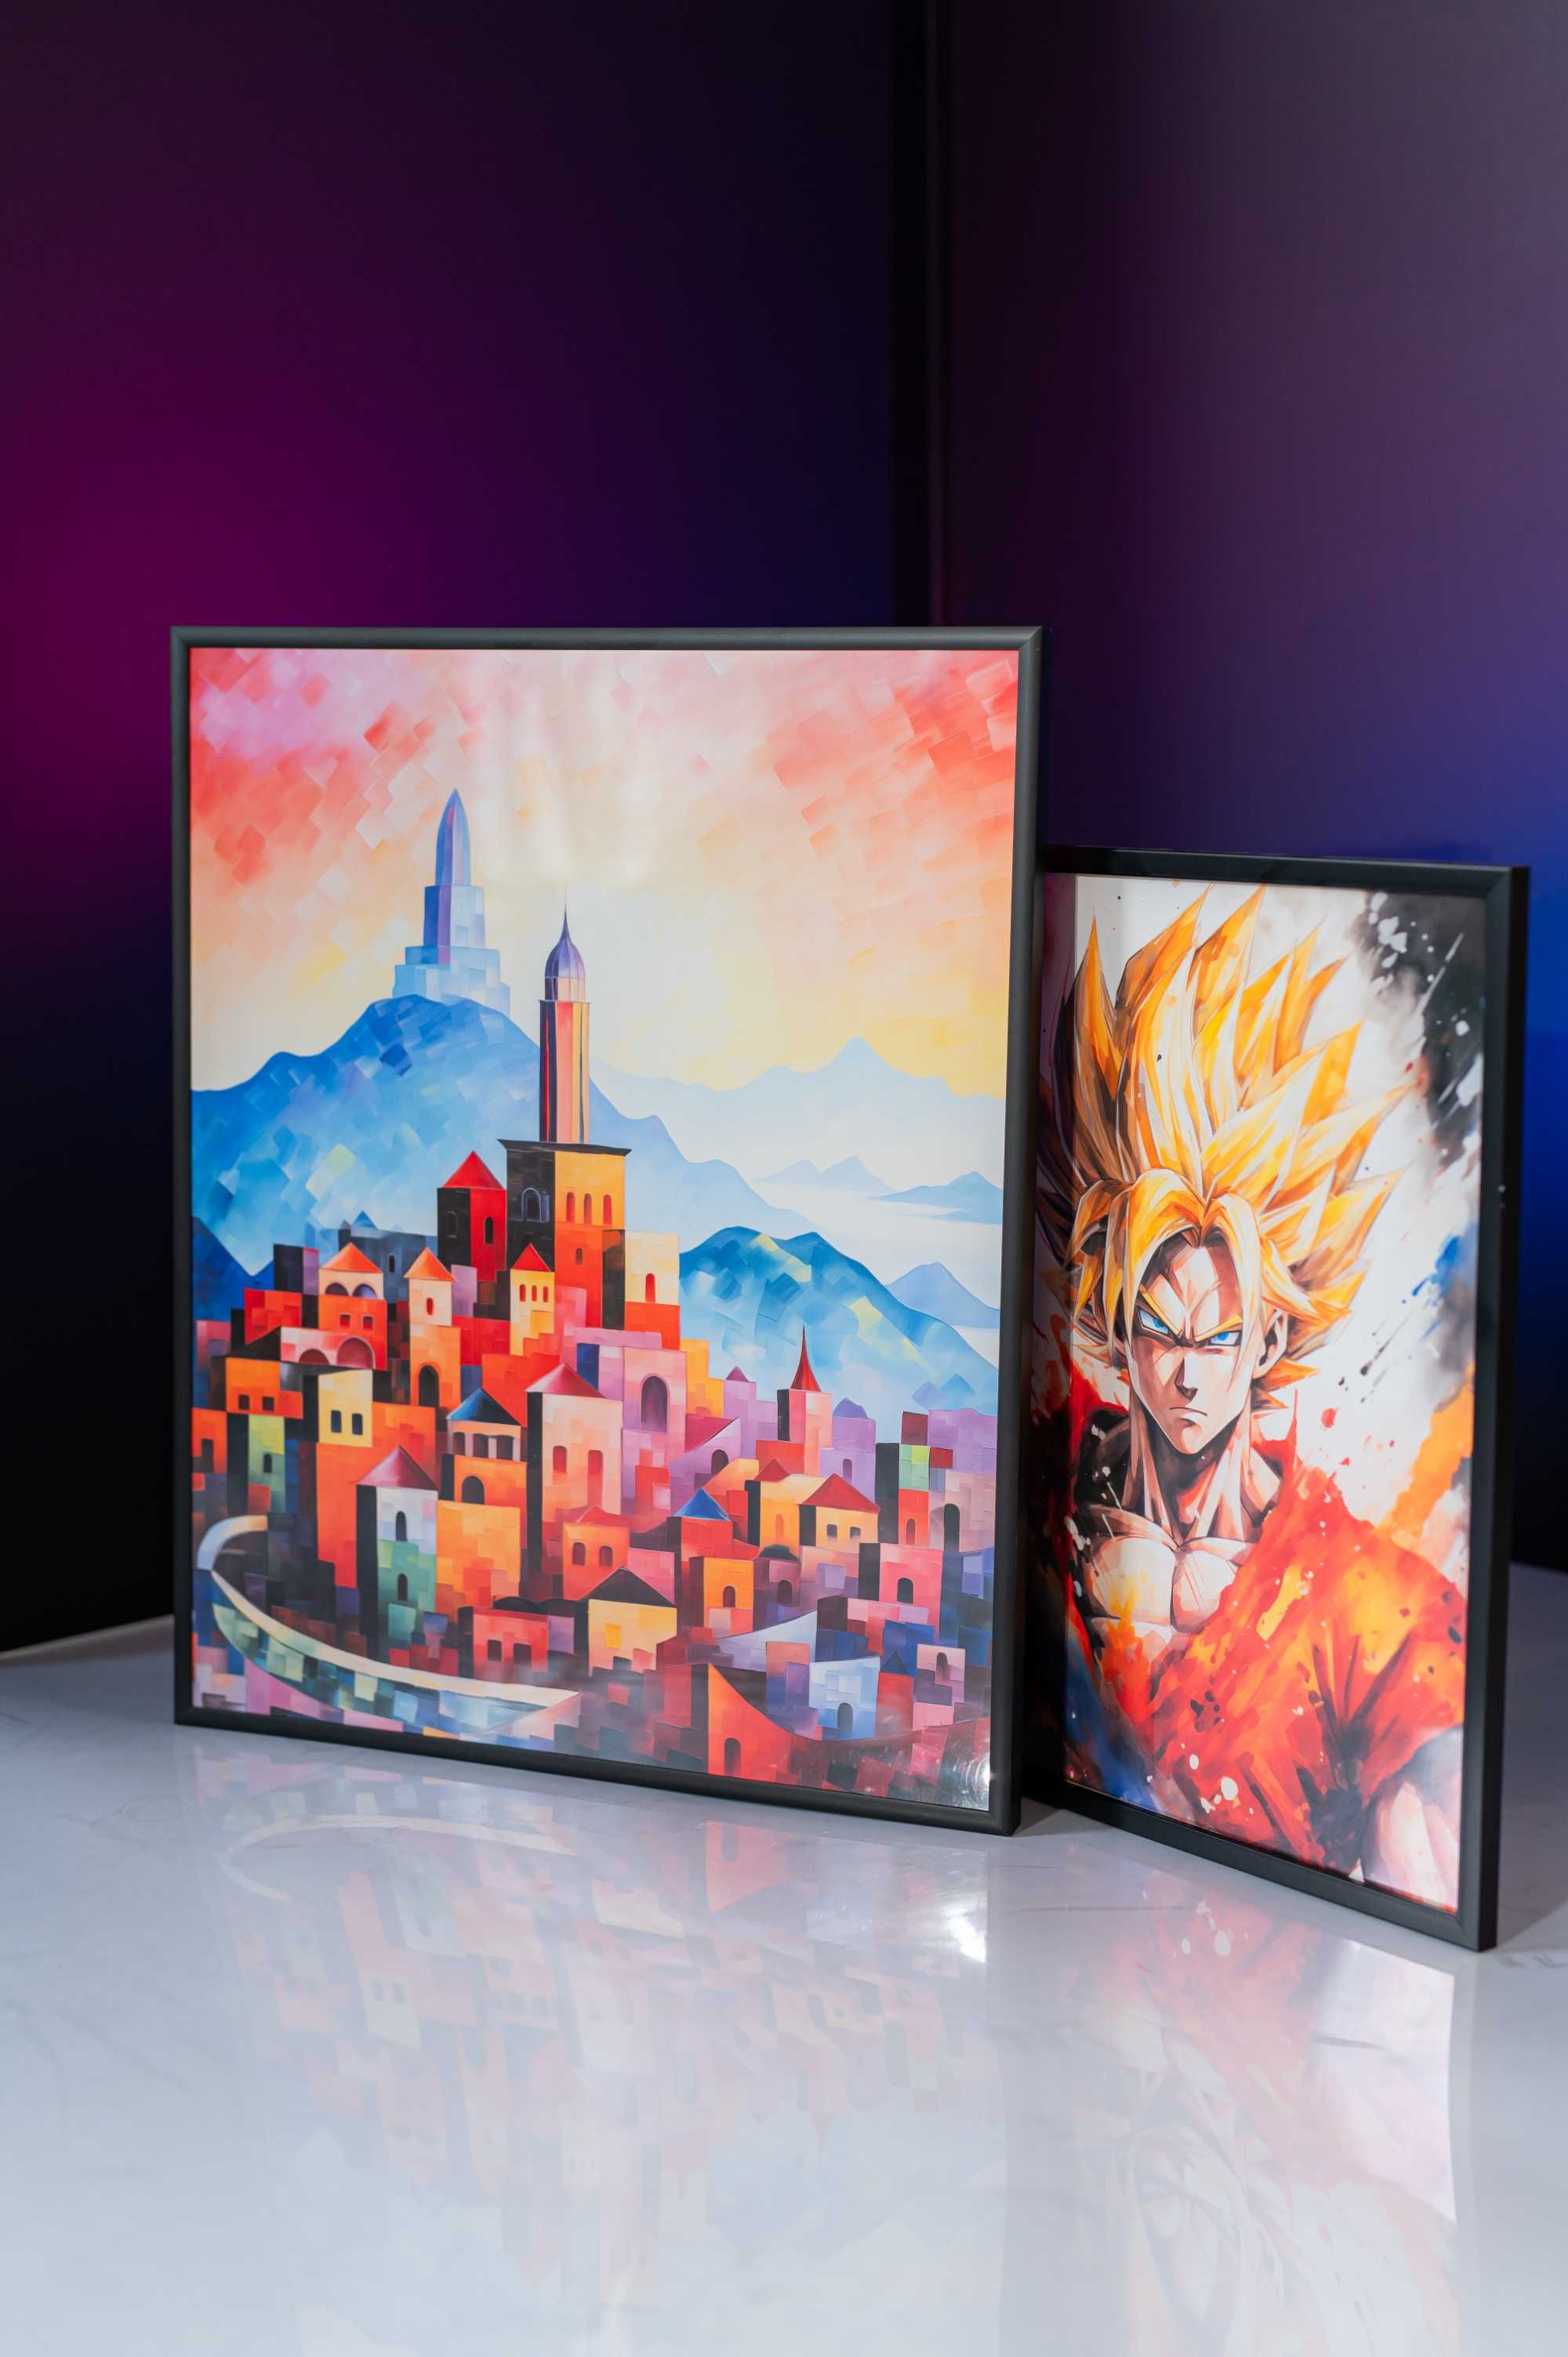 Plakat na Ścianę Obraz Dragon Ball Z Son Goku SSJ2 Anime 40x60 cm